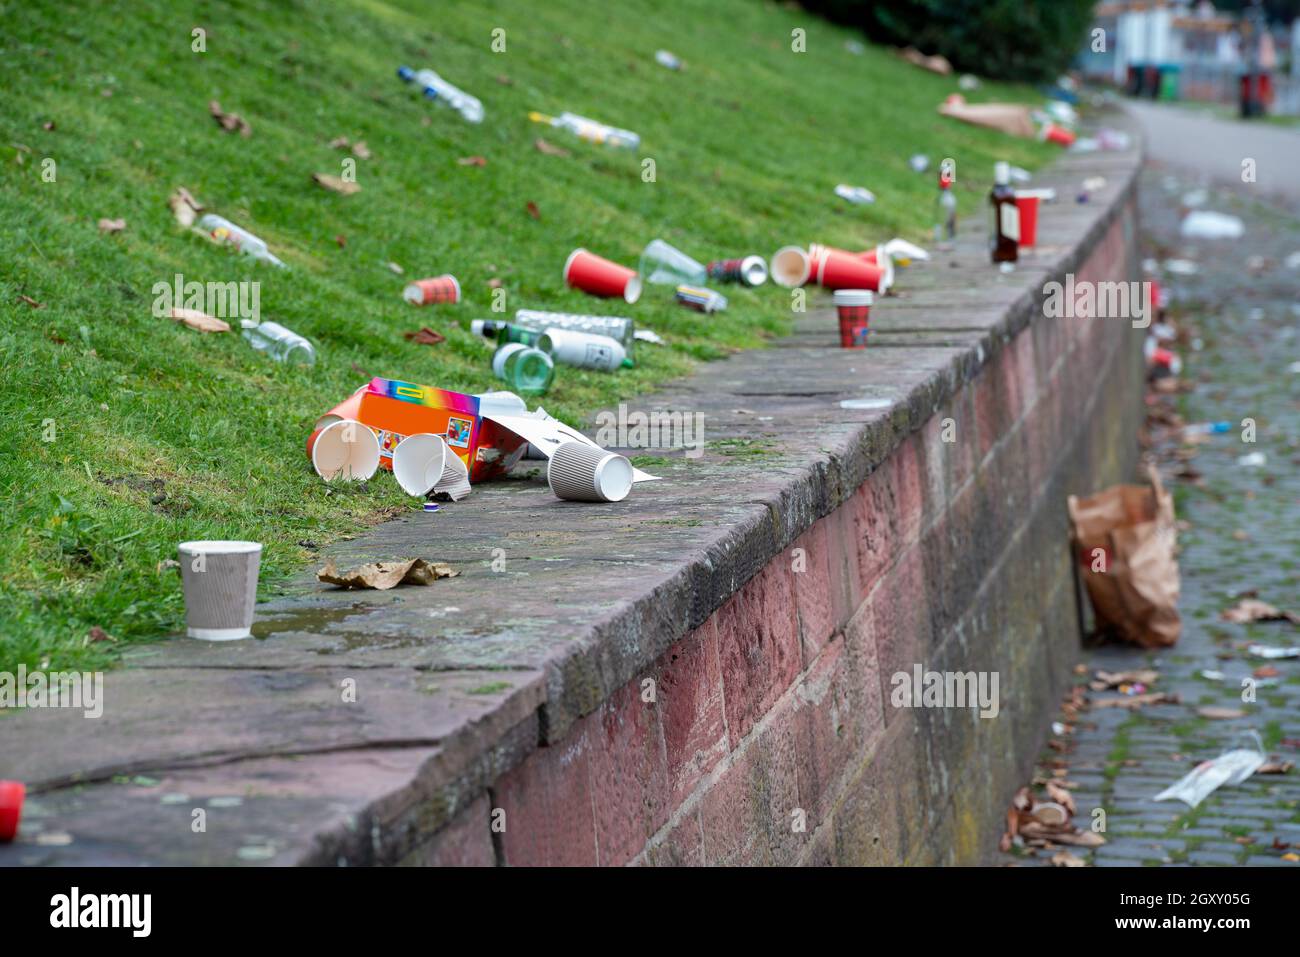 Les ordures dans la ville après les événements de masse - problème social des villes contemporaines Banque D'Images